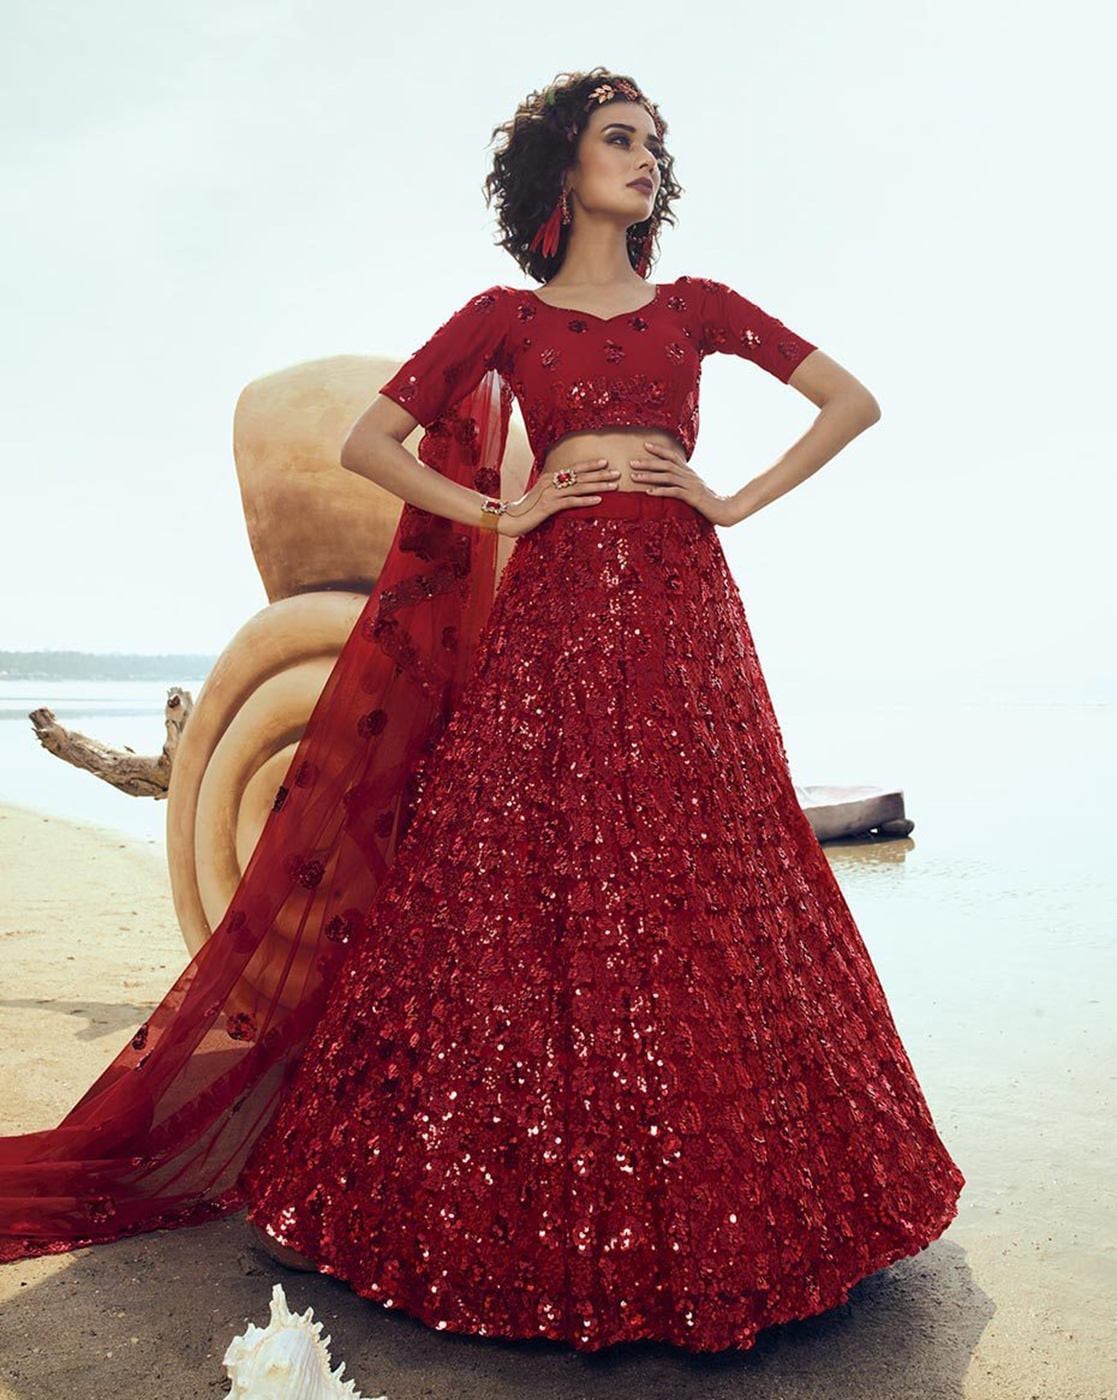 Designer Digital Printed Lehenga Choli for Women Party Wear - Etsy | Red  lehenga, Red lehenga choli, Red dress outfit